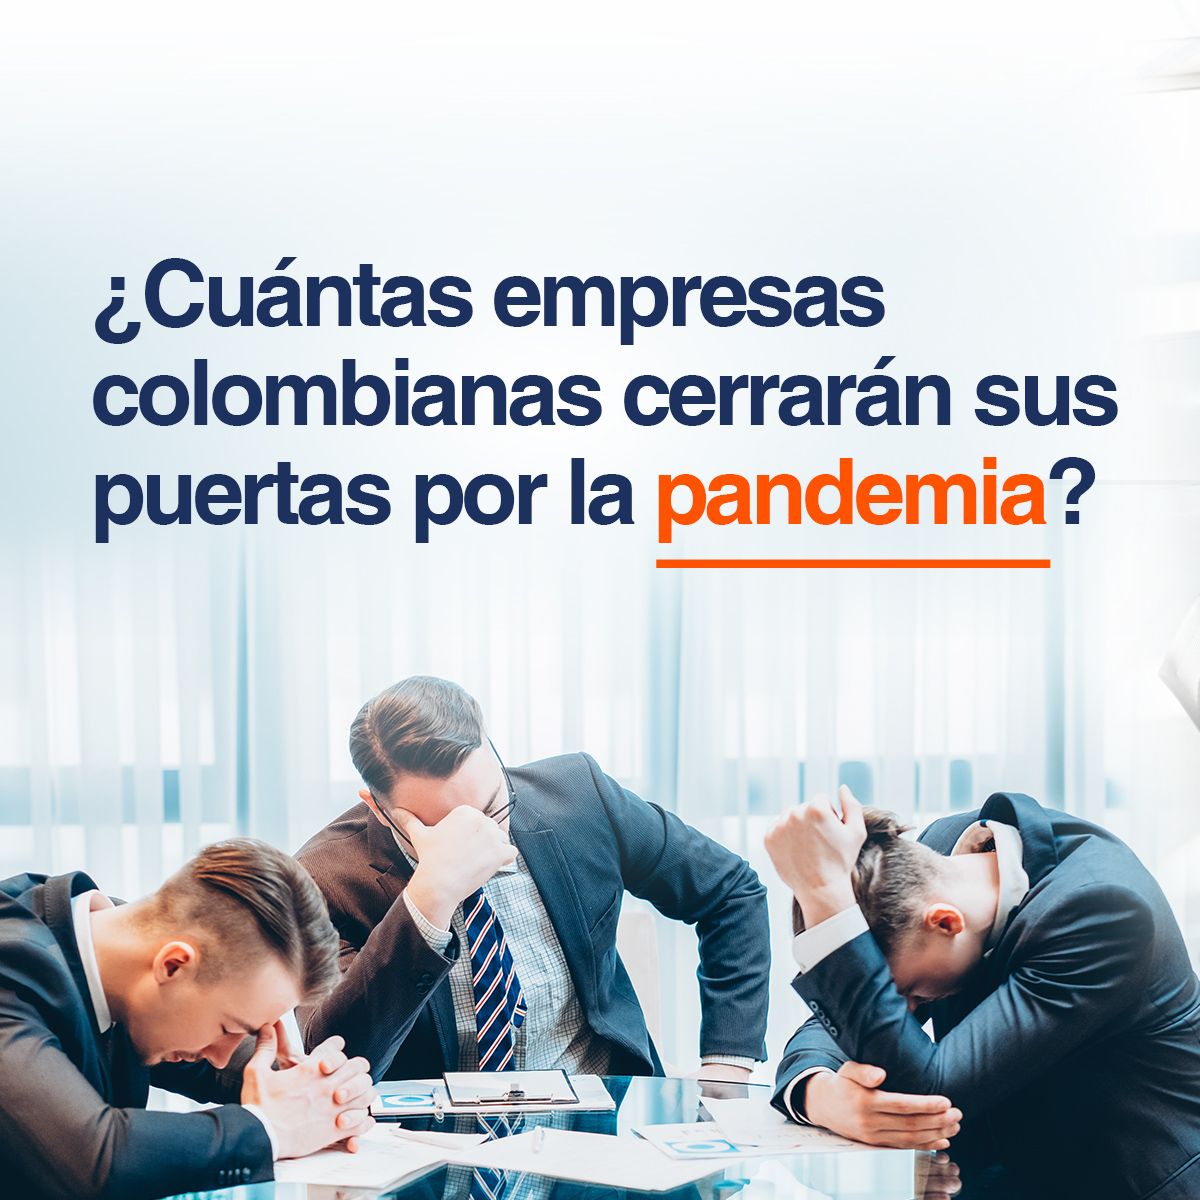 ¿Cuántas empresas colombianas cerrarán sus puertas por la pandemia?